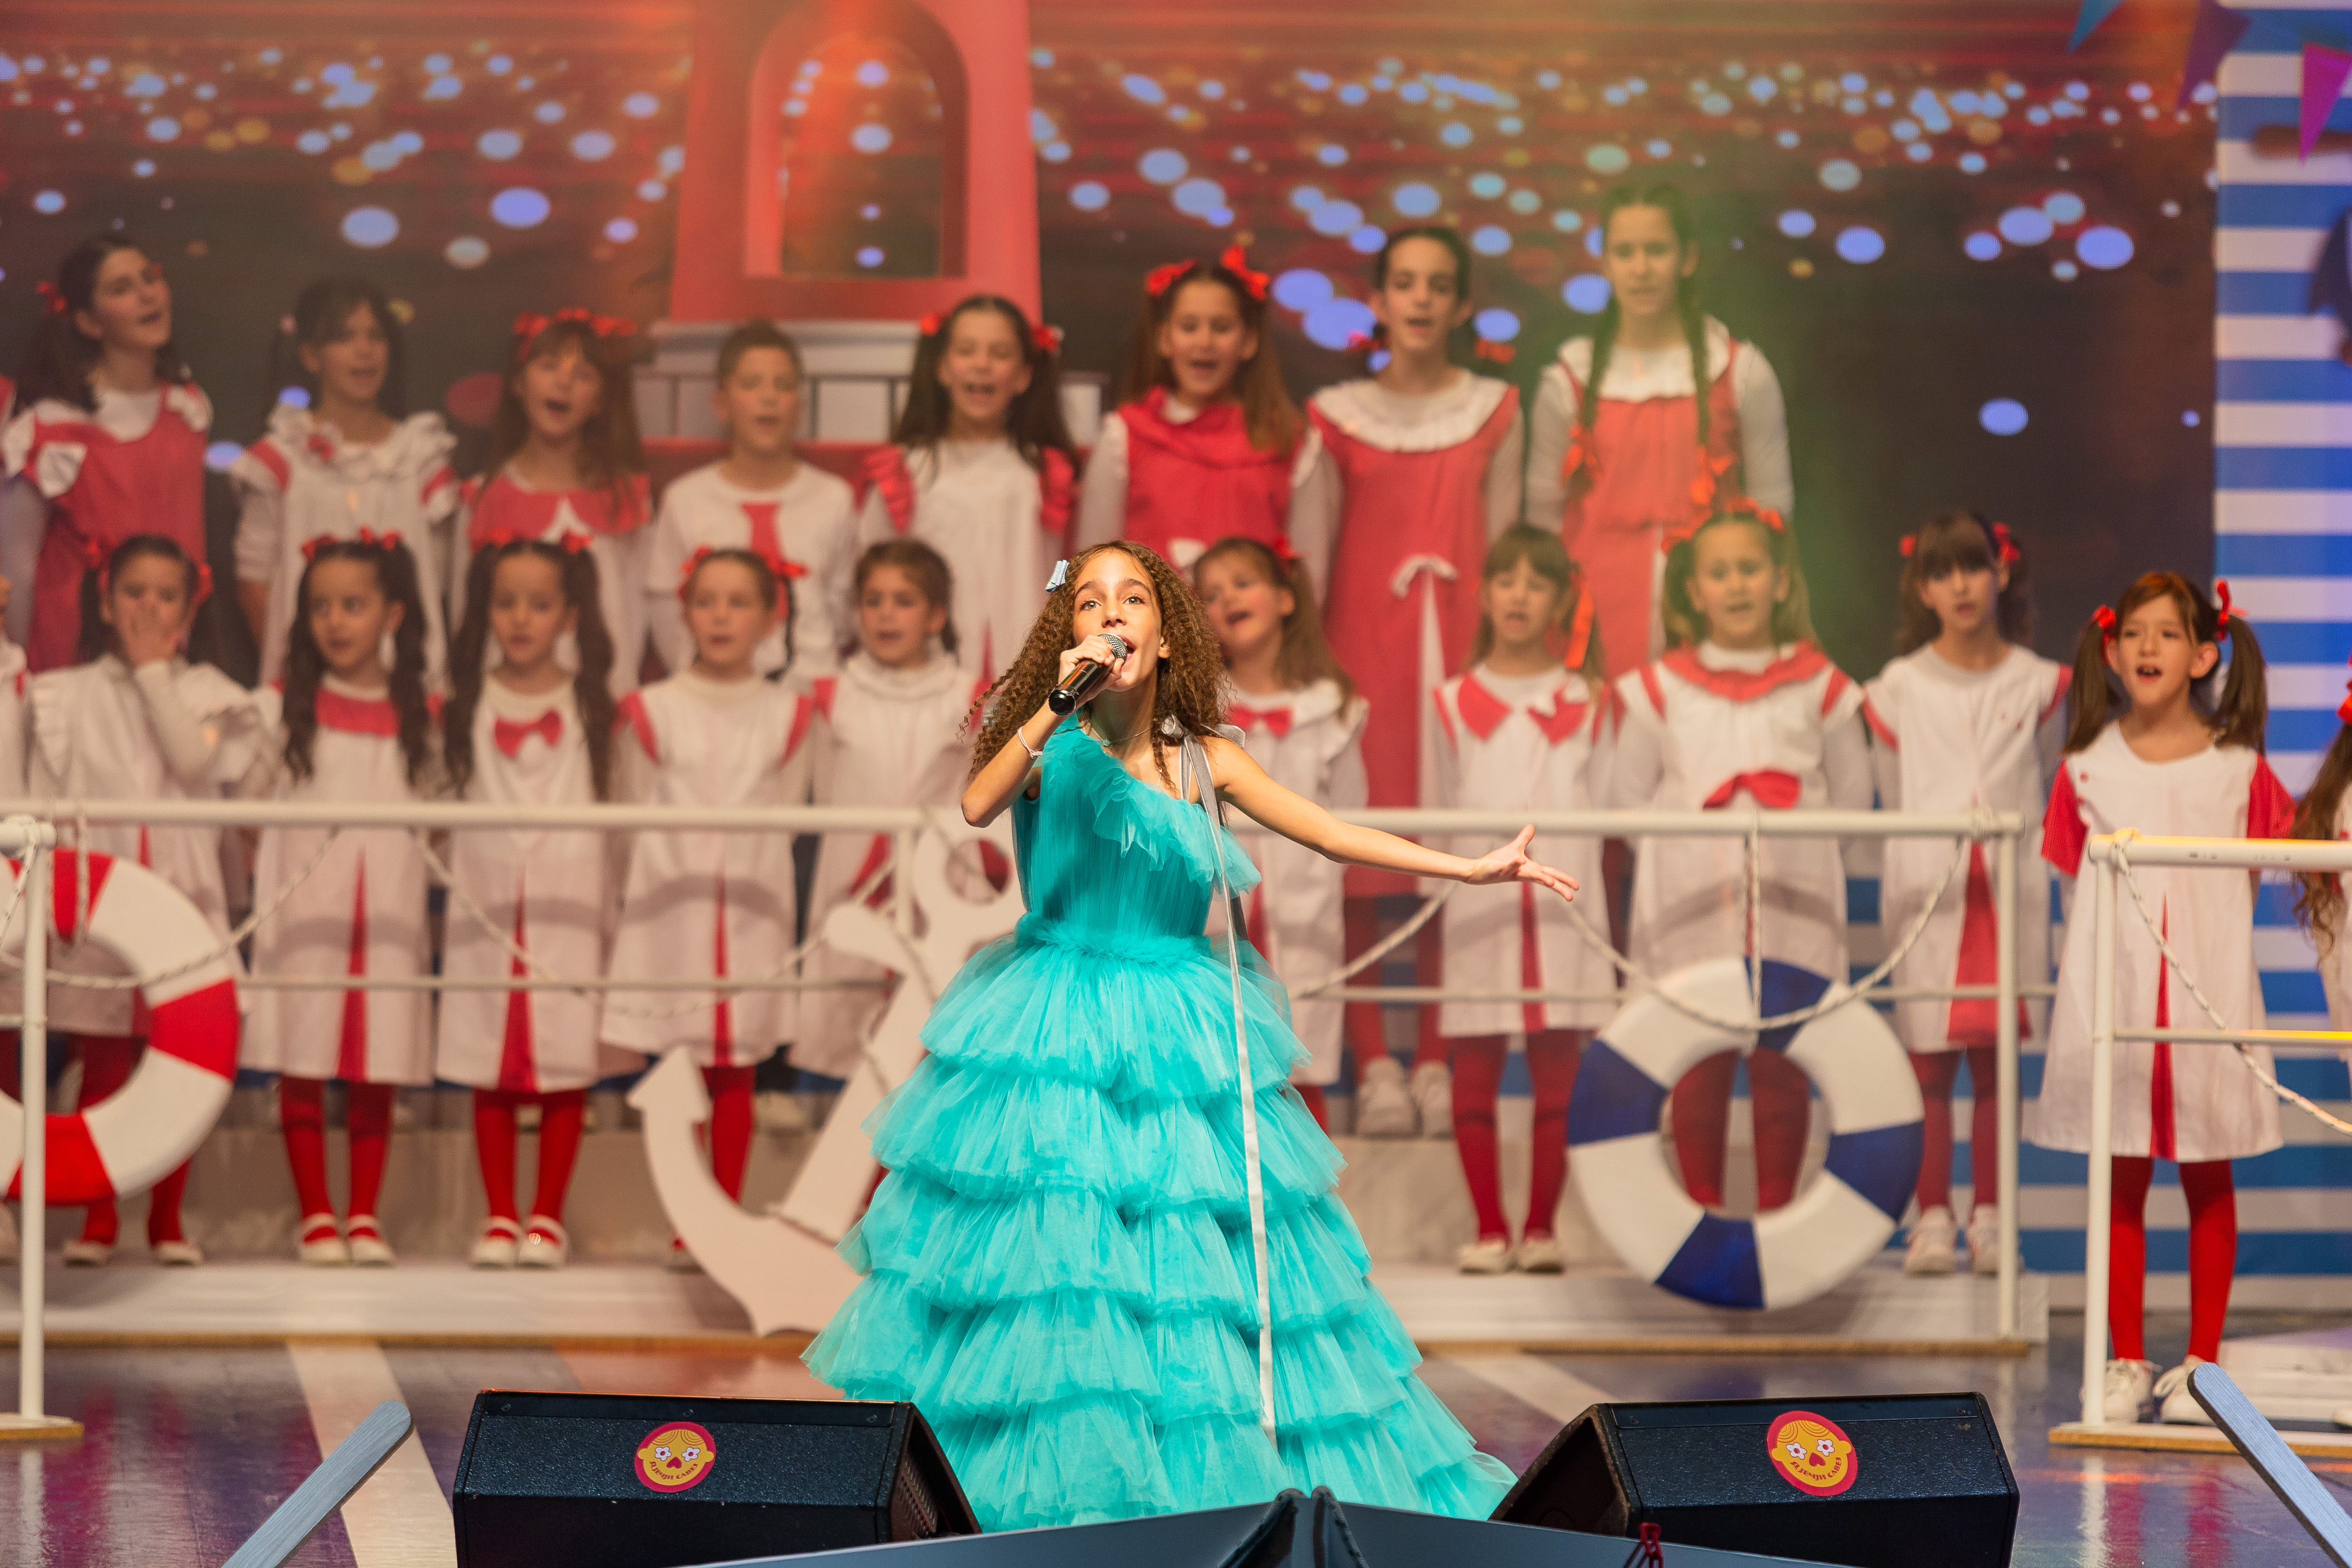 Raspisan konkurs za međunarodni festival dječje pjesme “Naša radost 2022”